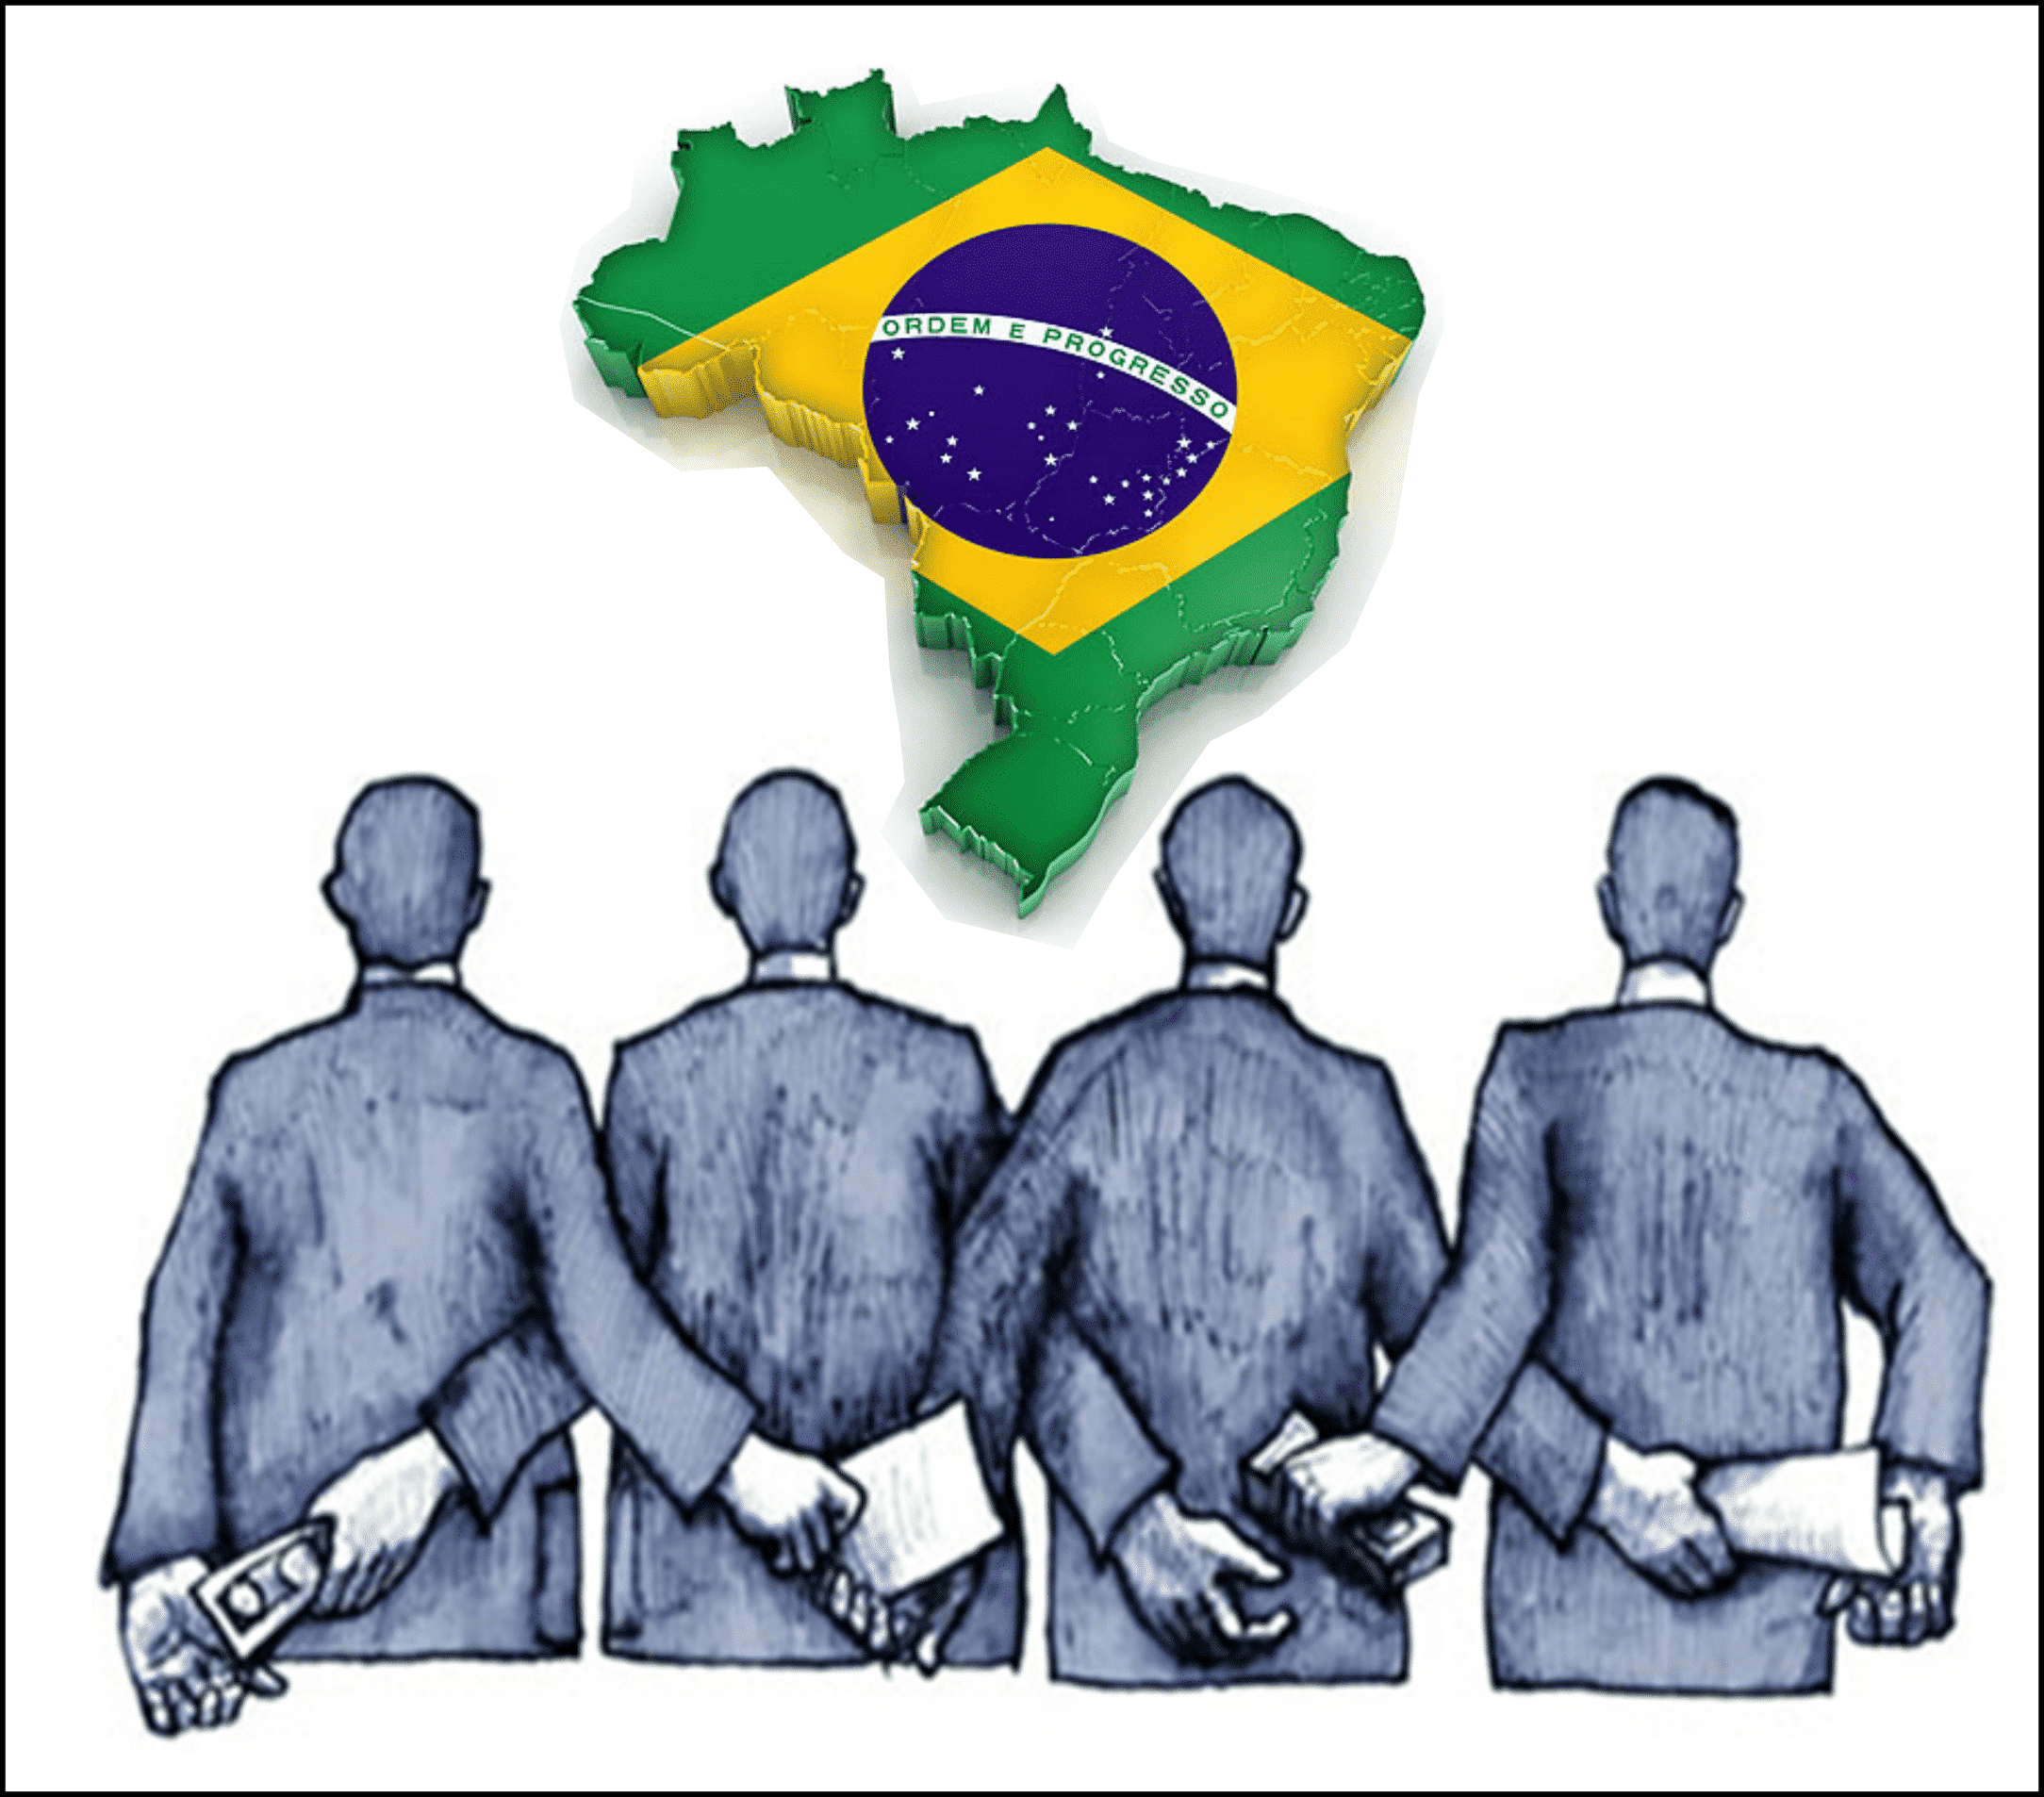 Estudo revela que Brasil pode conquistar R$3,6 trilhões em investimentos sustentáveis